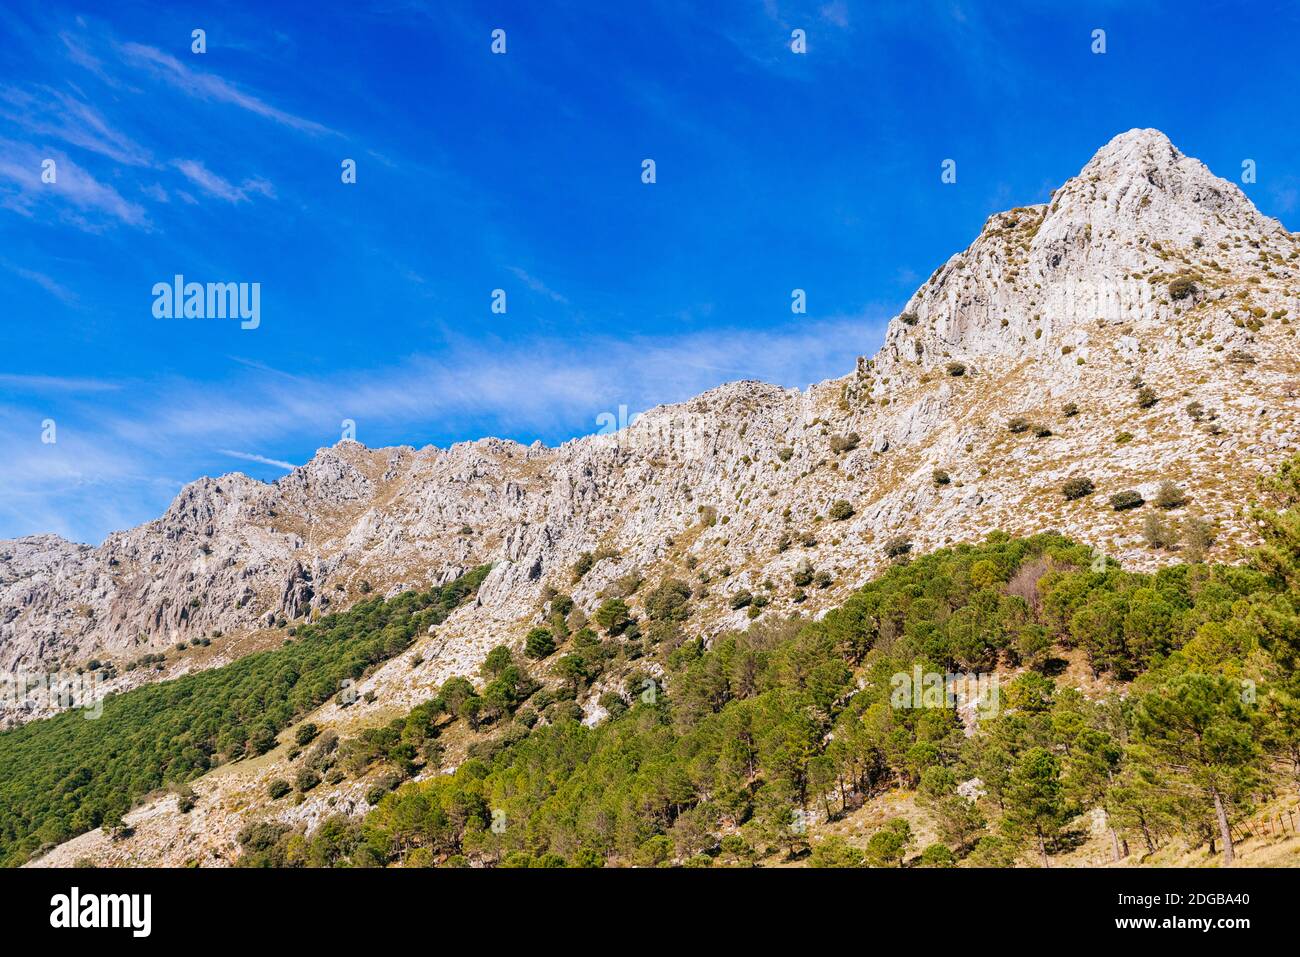 High mountains of limestone rock above the mountain pass of El Boyar - Puerto del Boyar. Grazalema, Cádiz, Andalucía, Spain, Europe Stock Photo